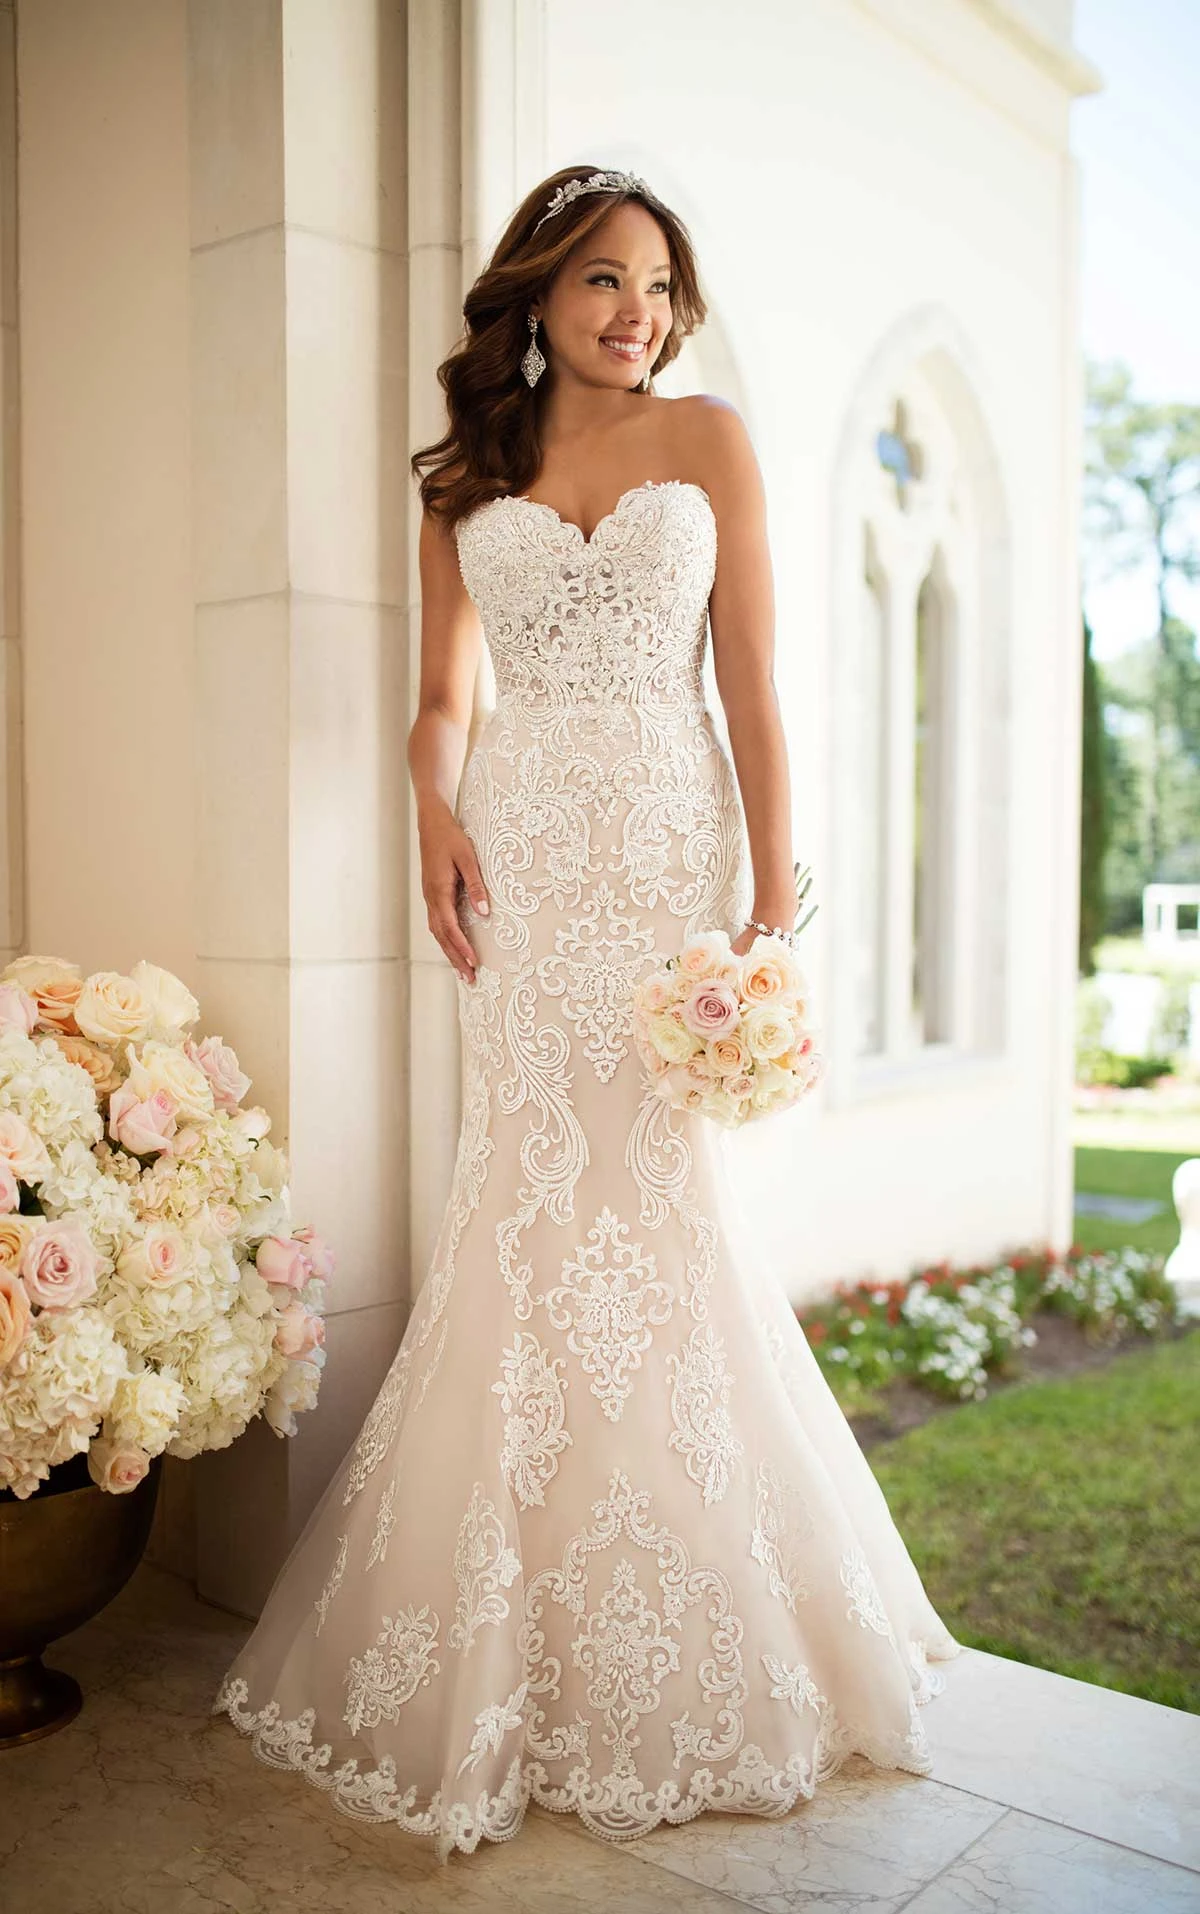 Elegant Lace Wedding Dress Stella York Wedding Gowns